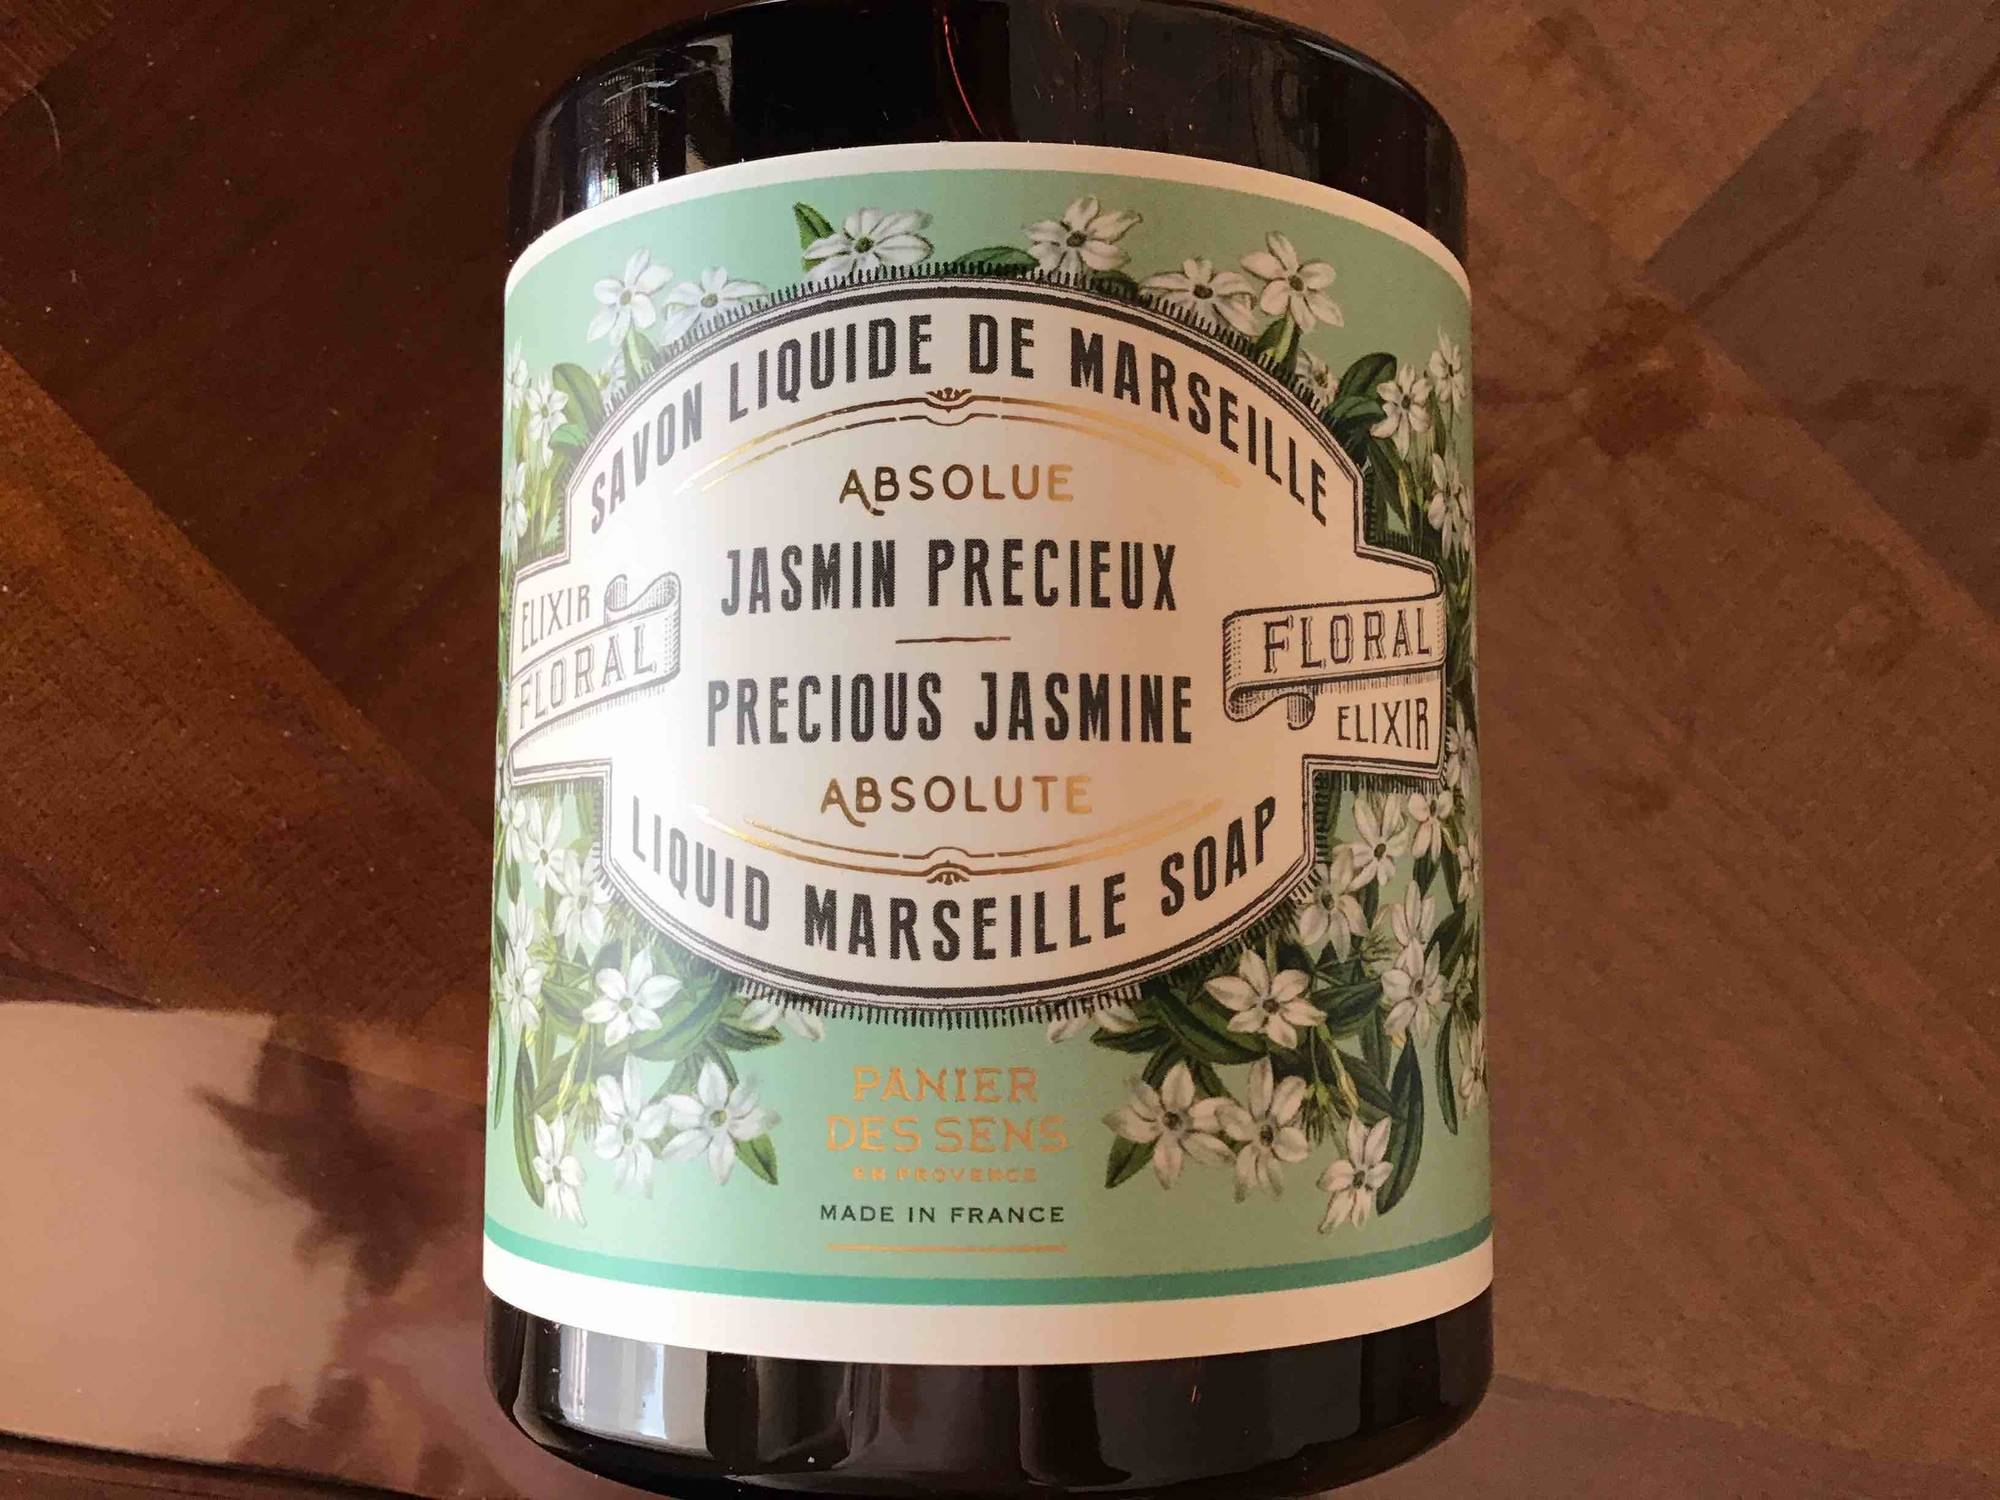 PANIER DES SENS - Jasmin précieux - Savon liquide de Marseille 